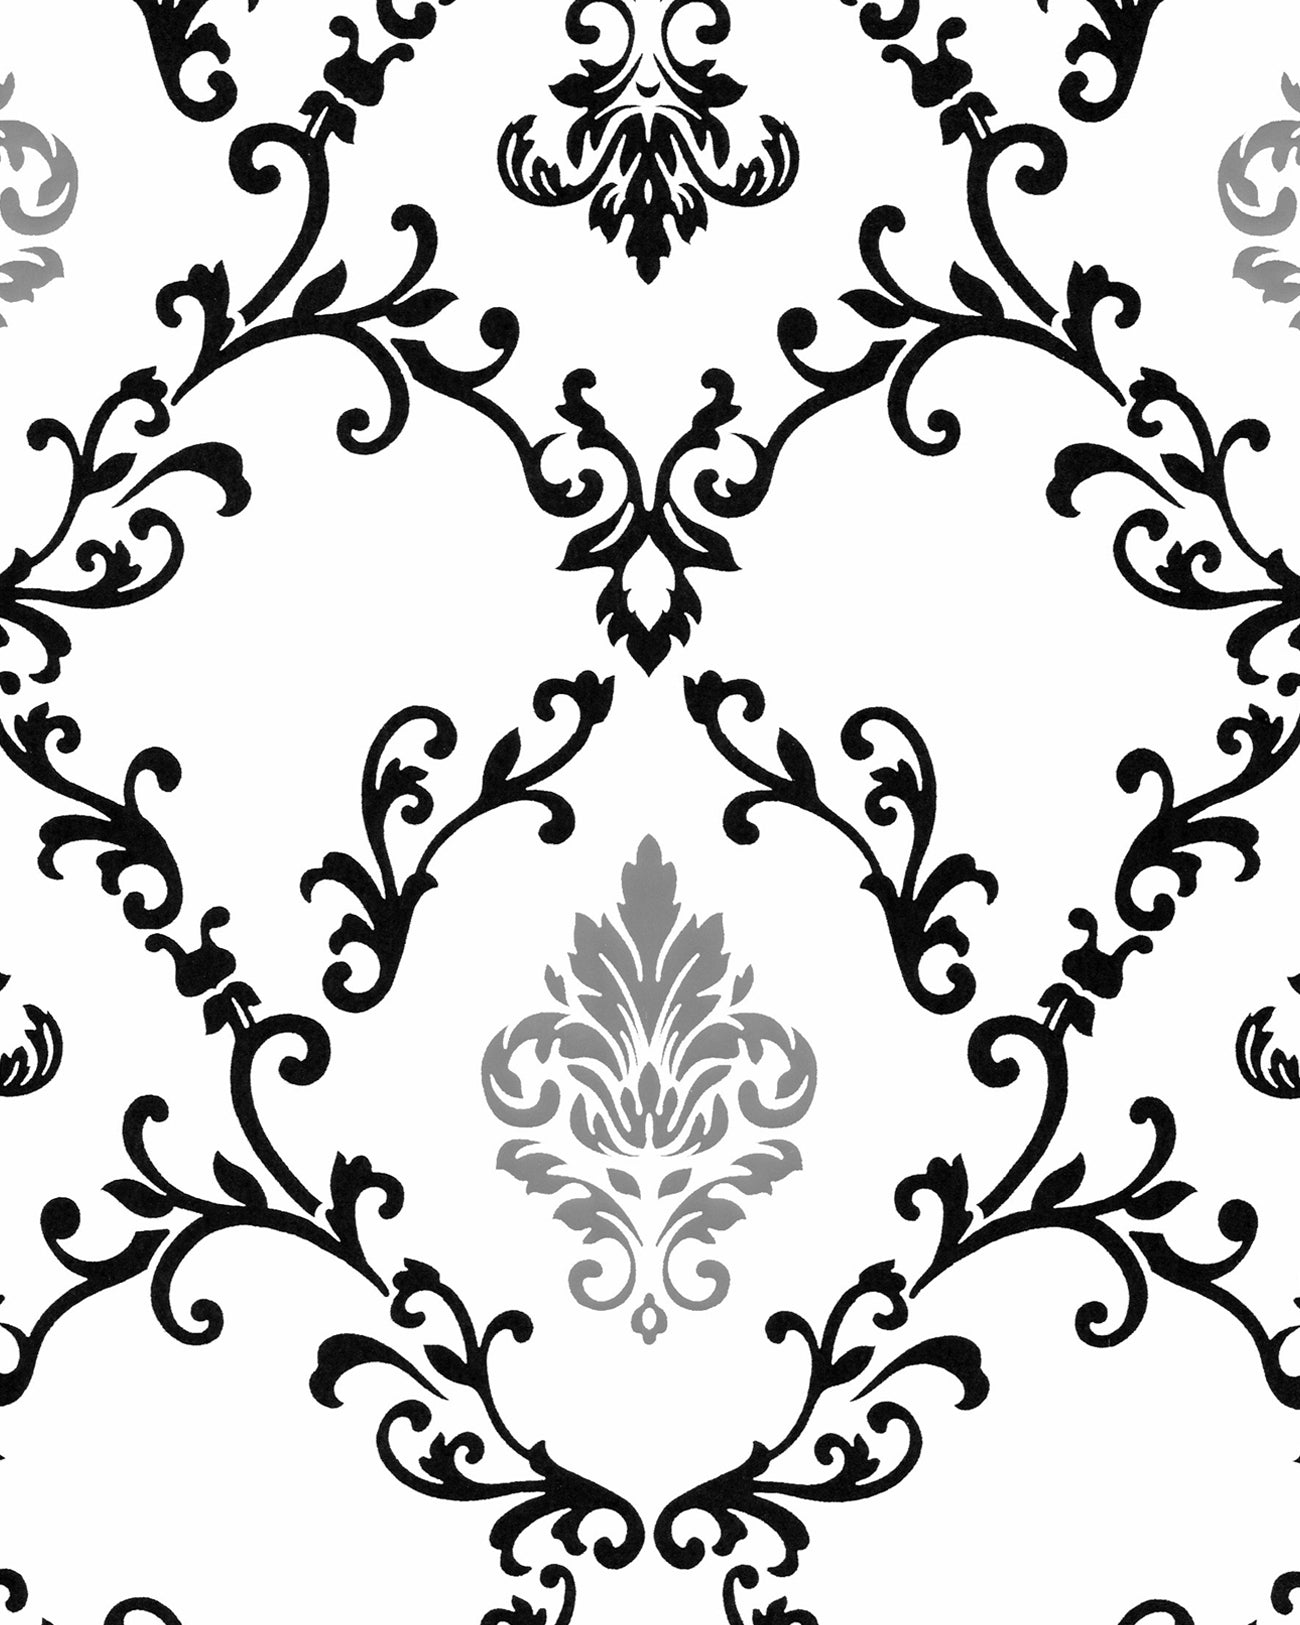 Barocktapete EDEM 85026BR20 glatte Vinyltapete mit Ornamenten und metallischen Akzenten weiß schwarz silber 5,33 m2